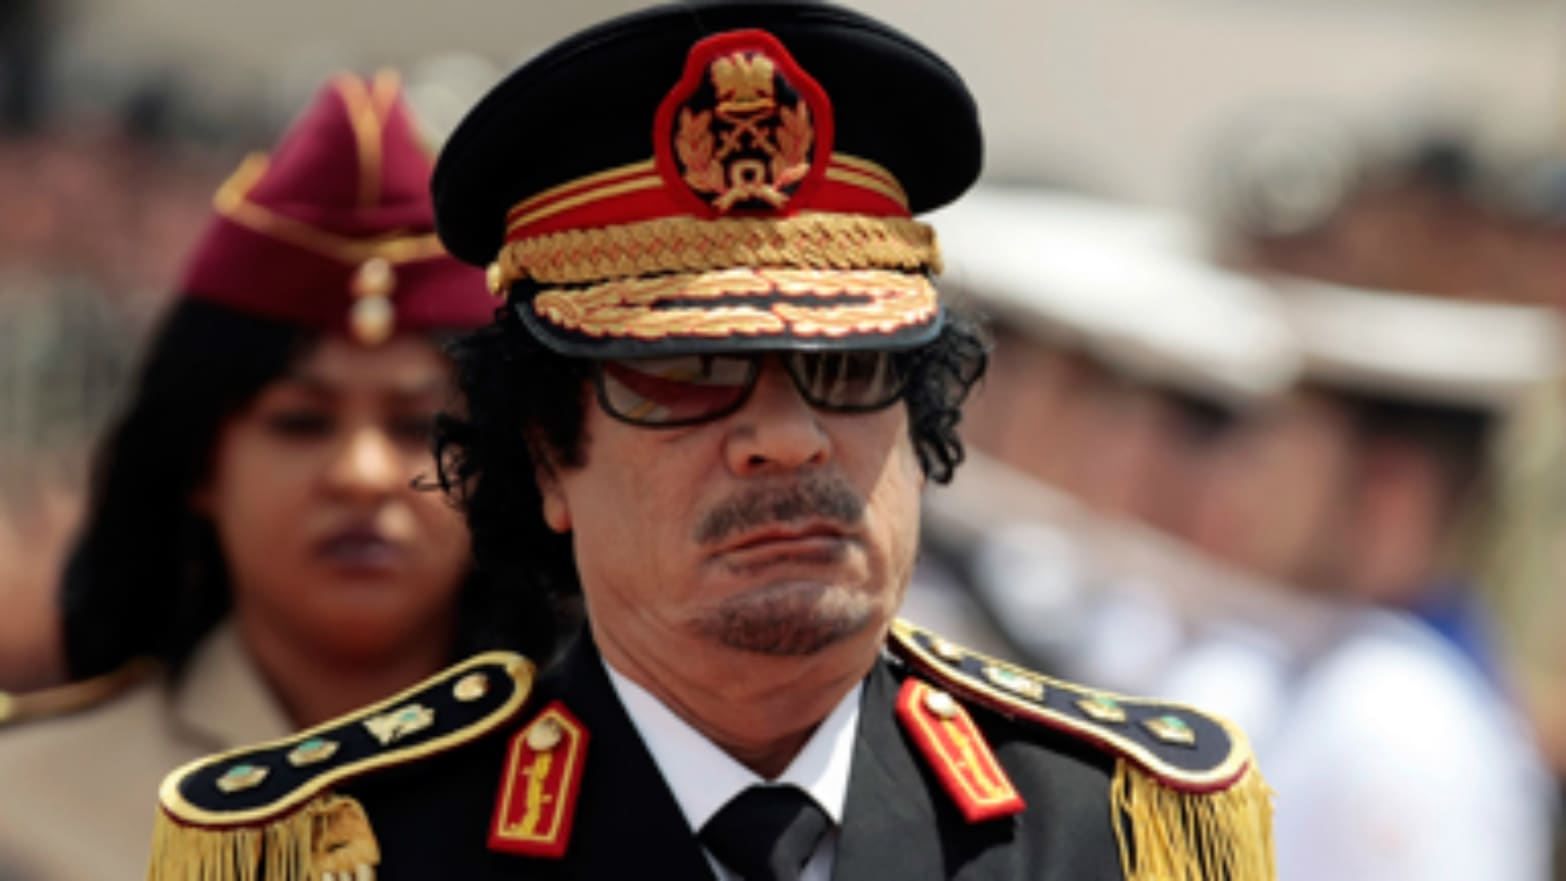 Photo Courtesy: Image of Mummary Gaddafi